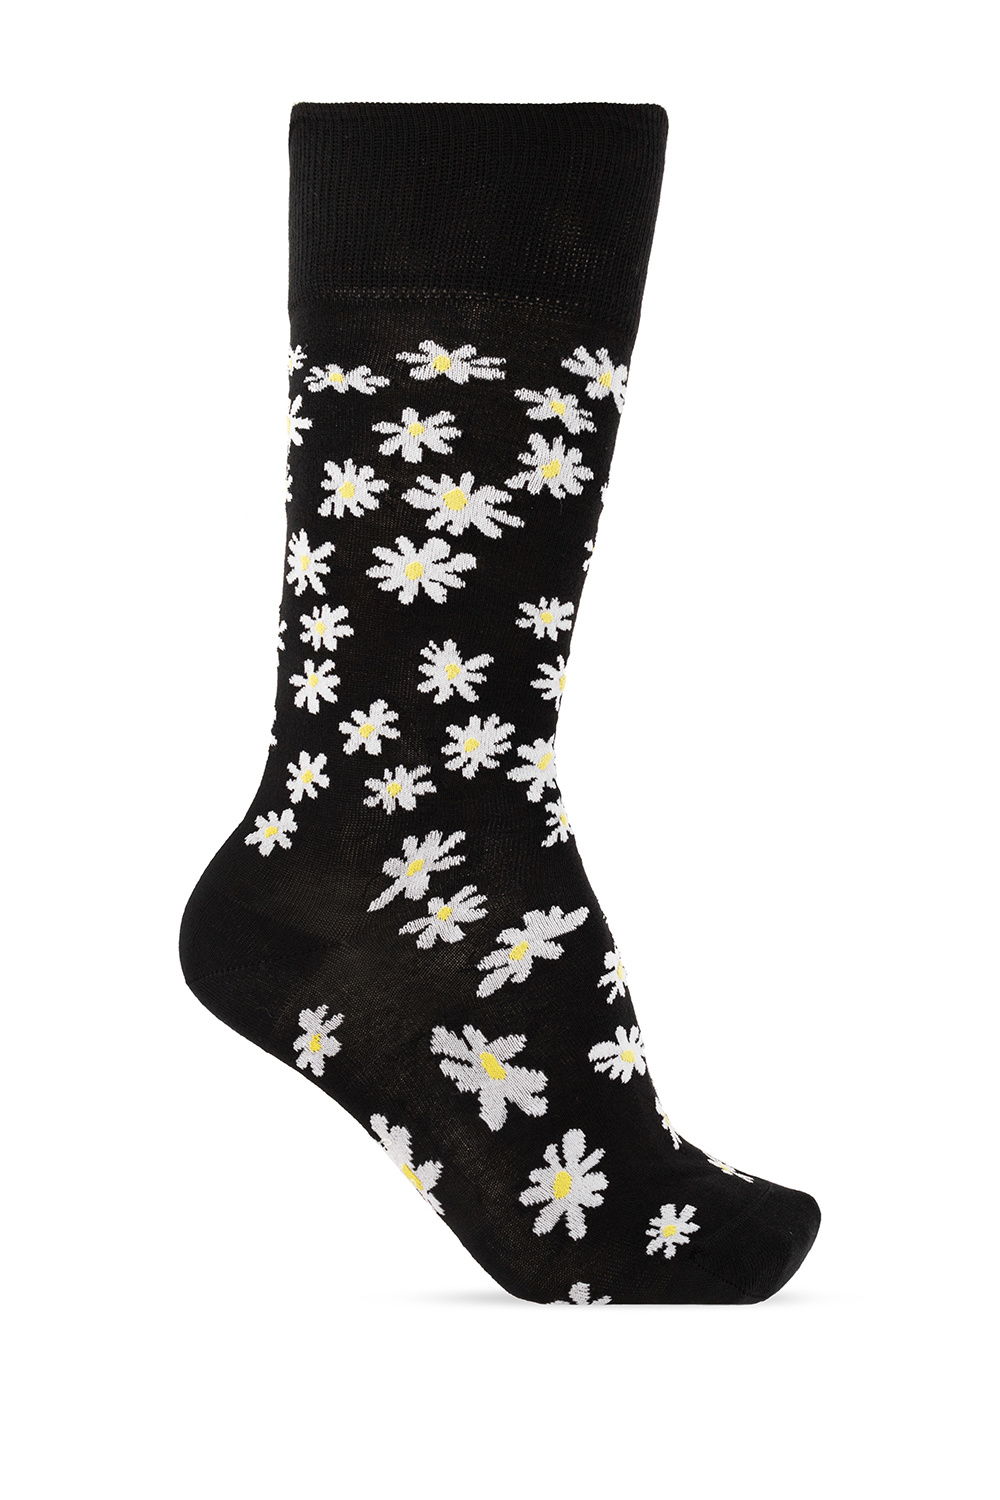 Paul Smith Floral socks